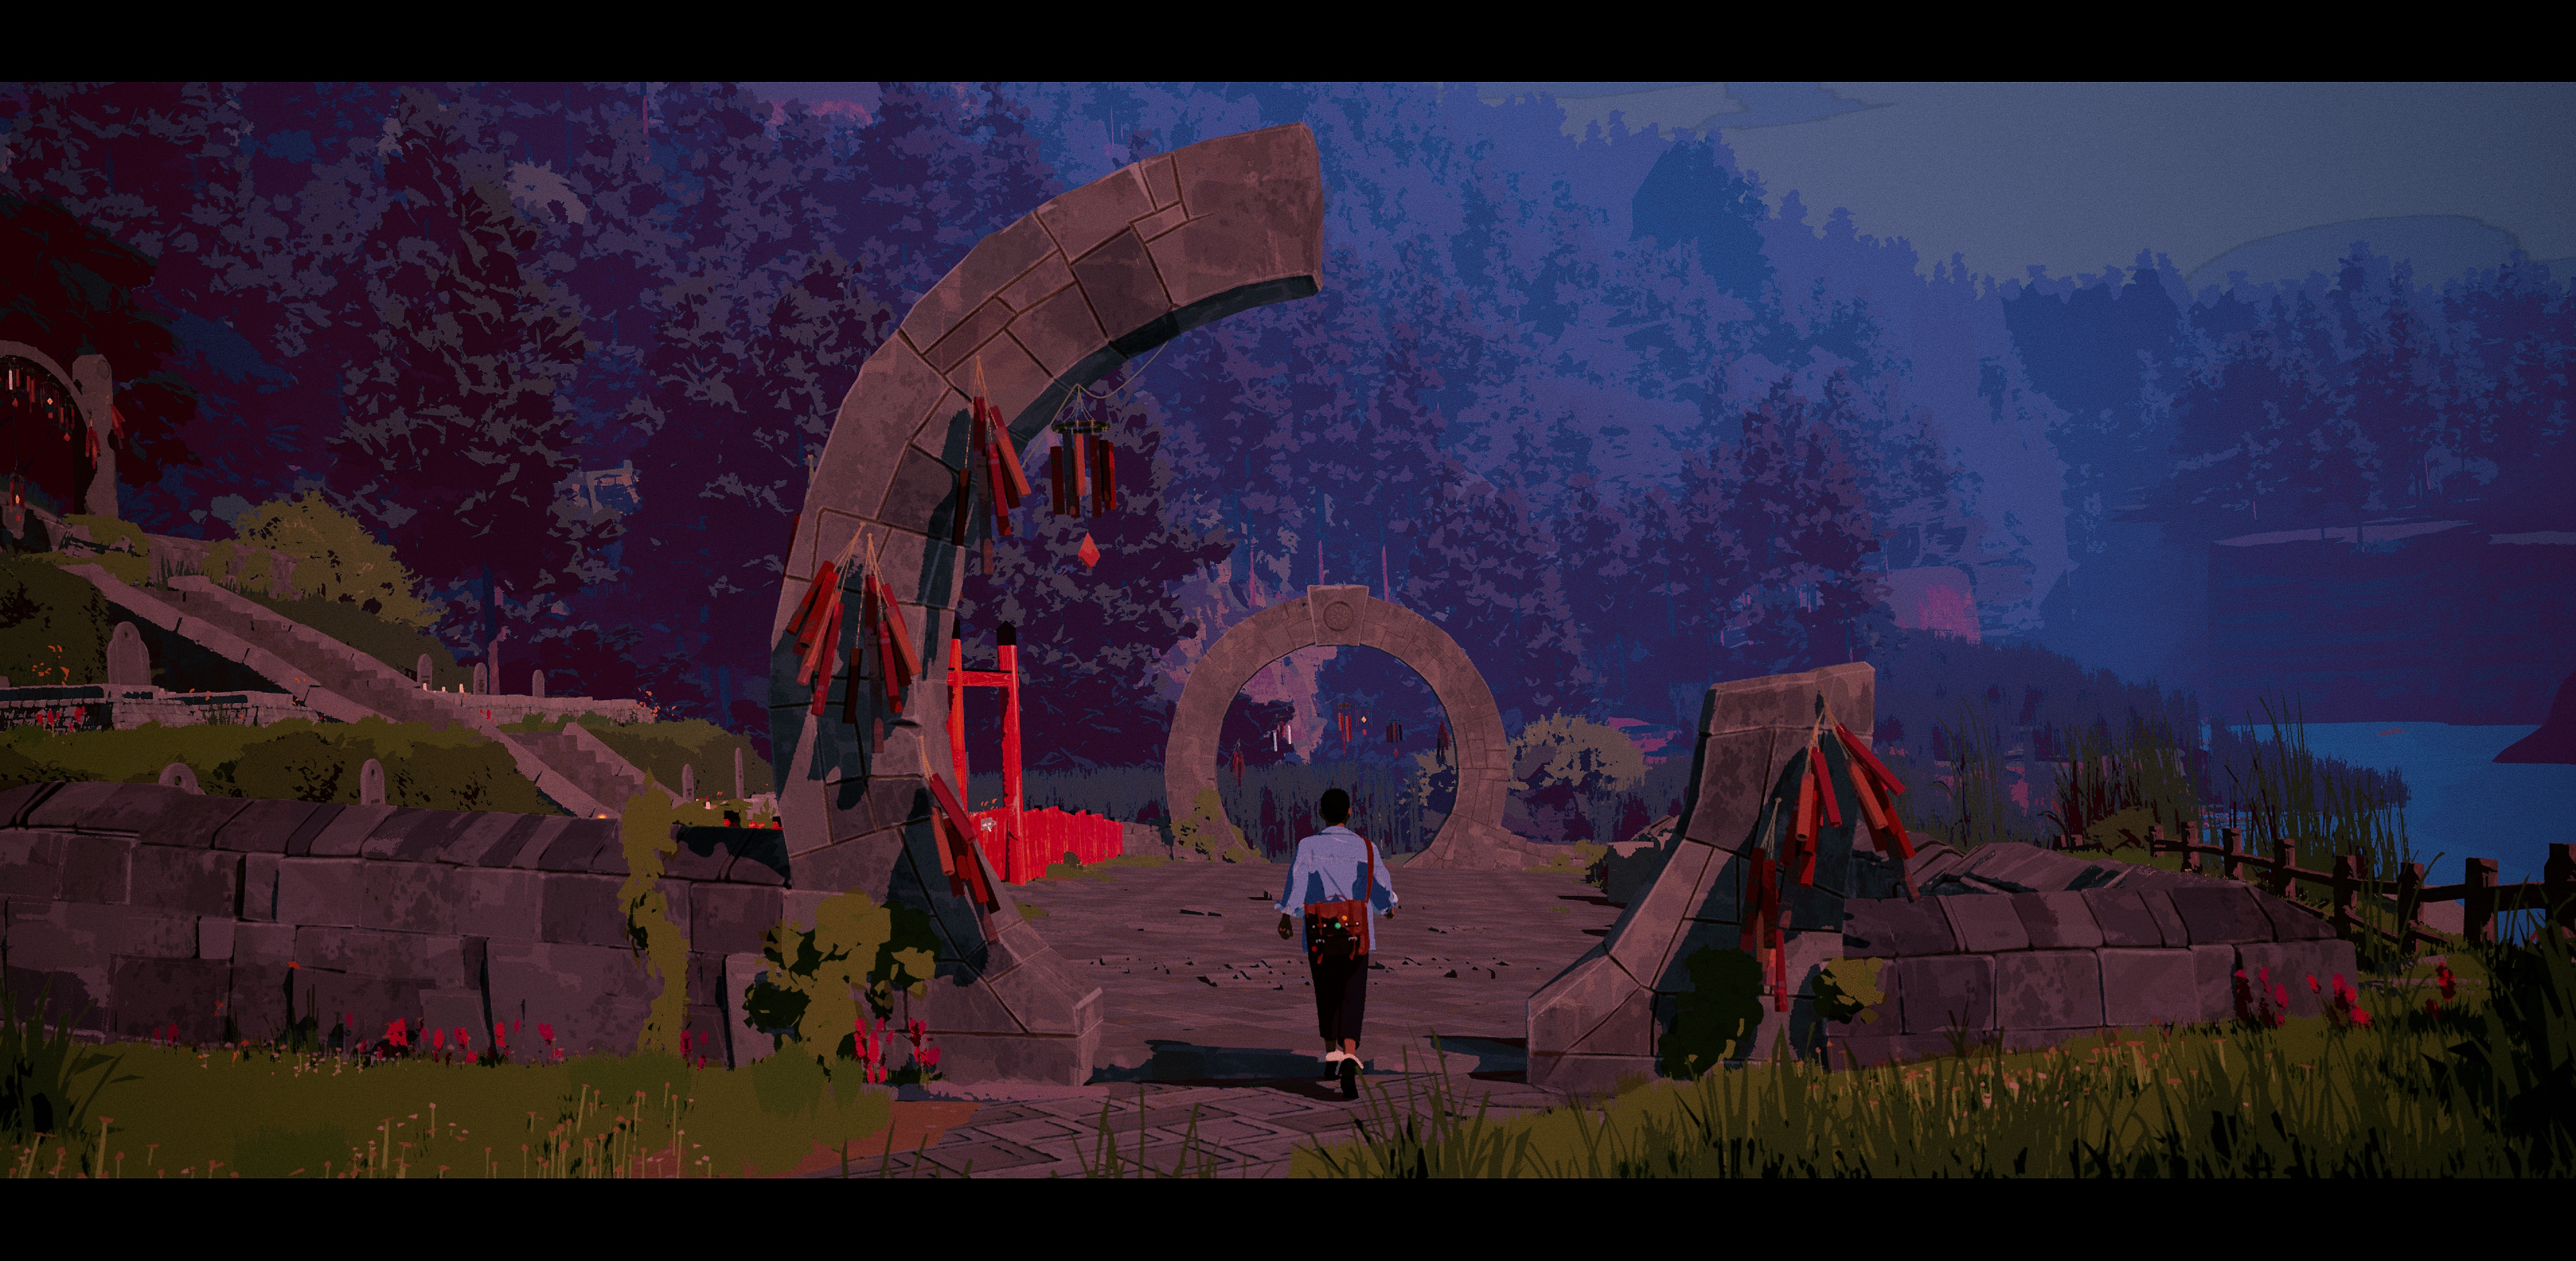 Season: Captura de pantalla mostrando a la protagonista de pie en una extraña estructura